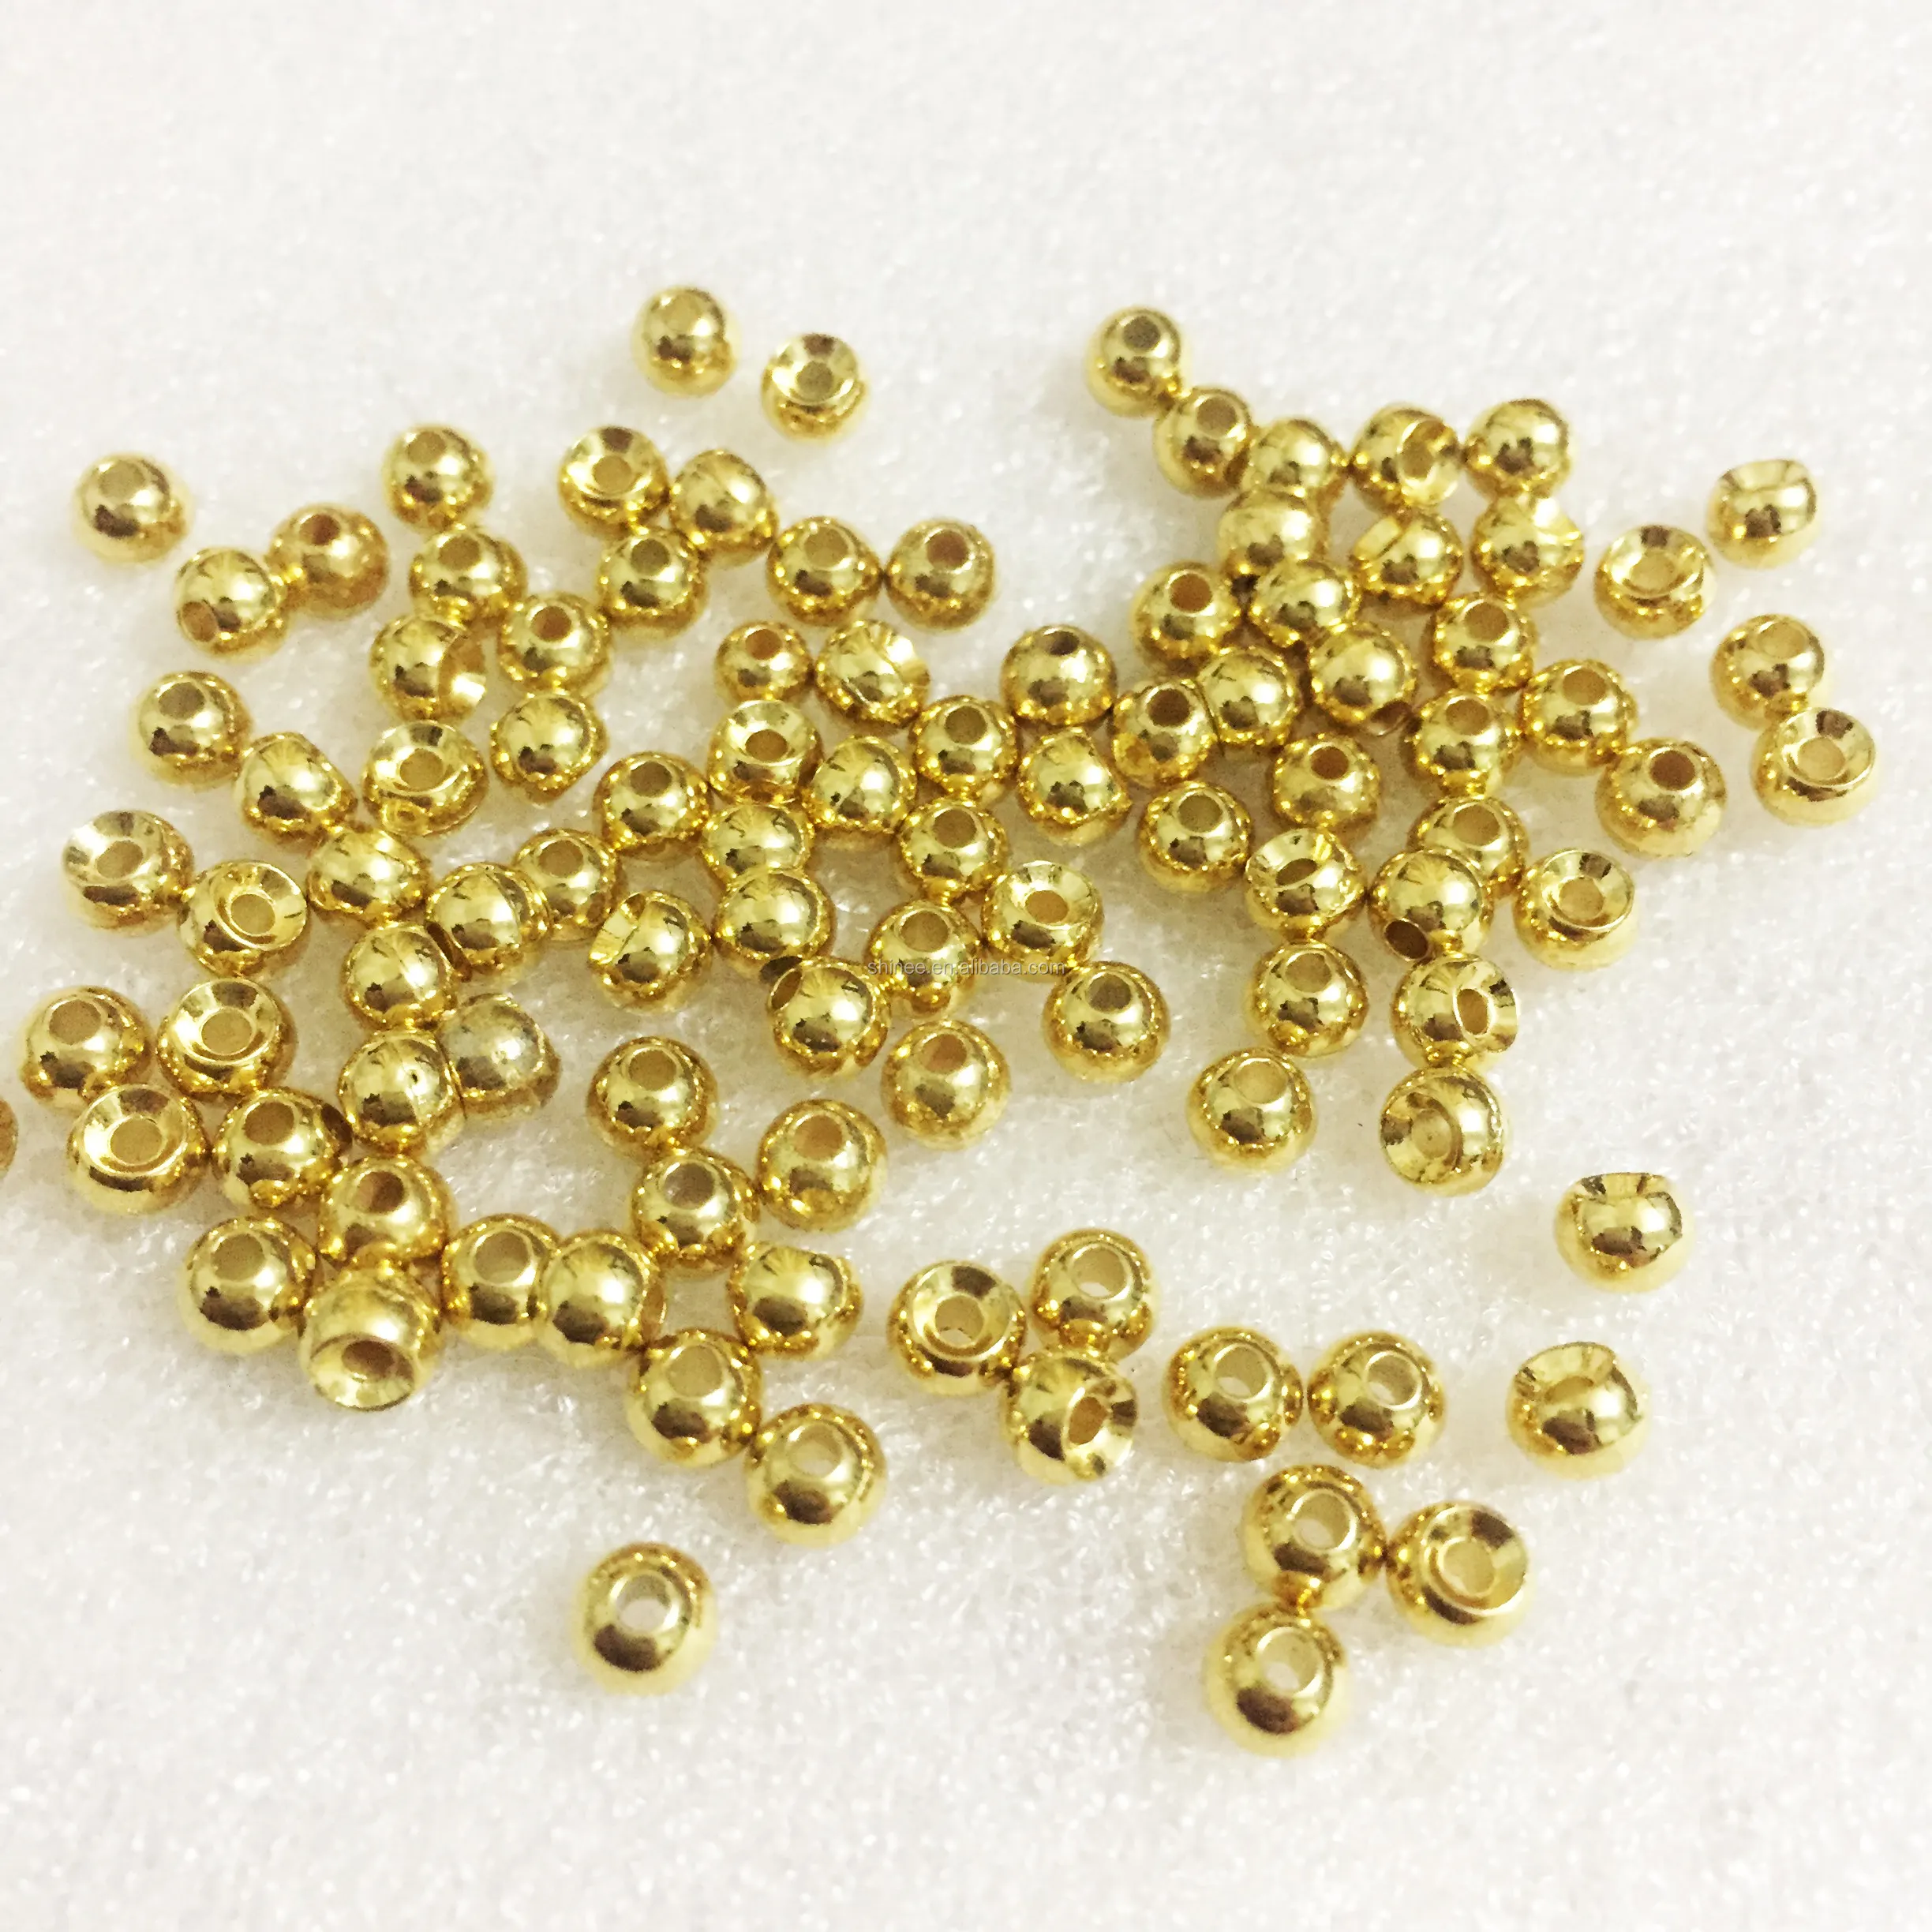 Ouro/rosa dourado/prata banhado 2mm 2.5mm 3mm 4mm 5mm...10mm jóias contas de ouro inoxidável